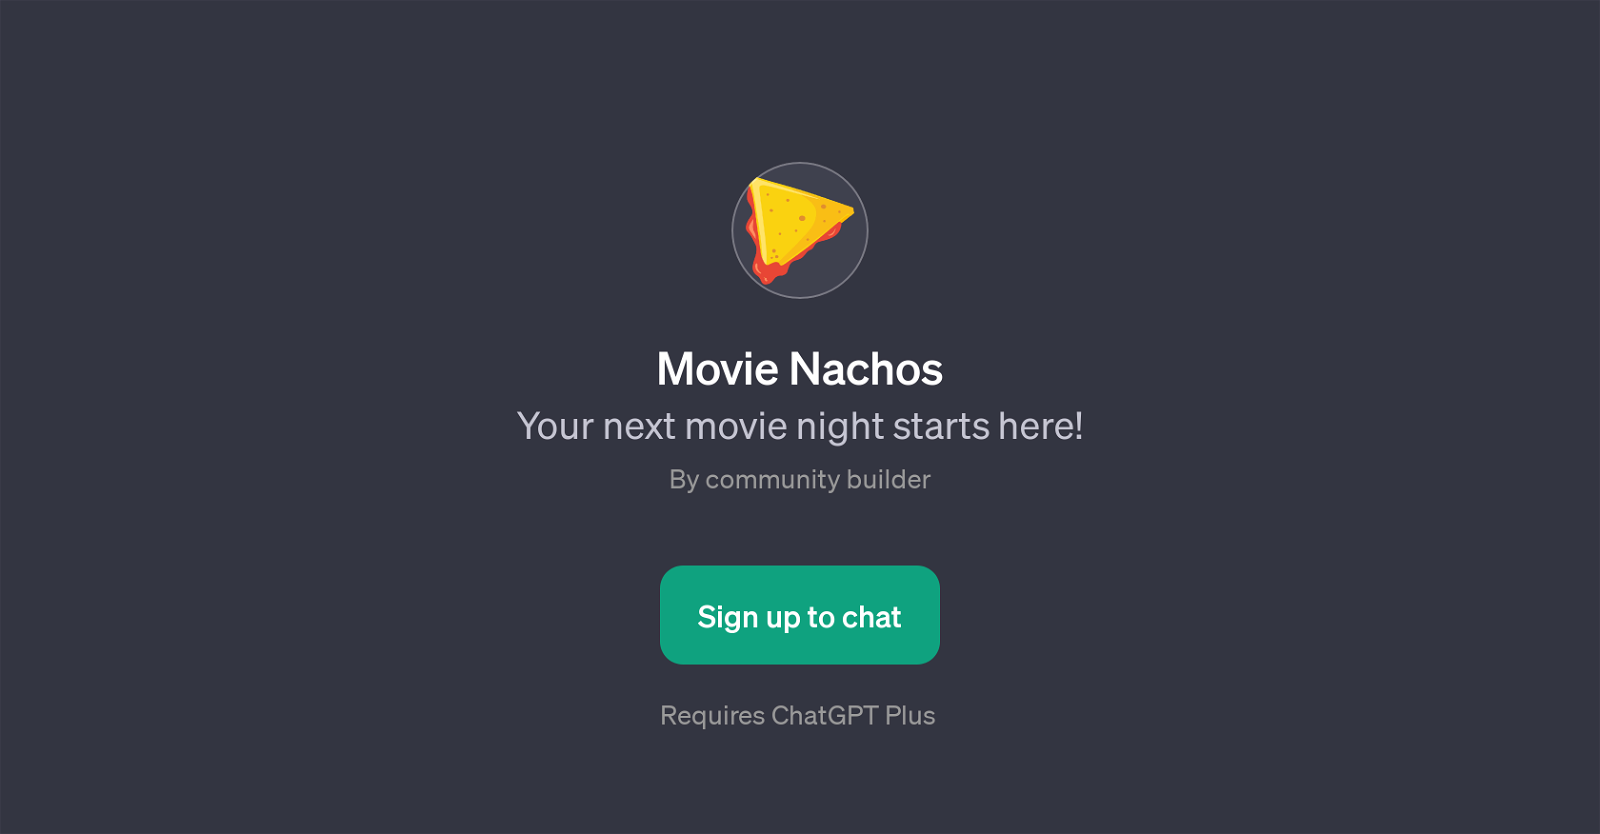 Movie Nachos website